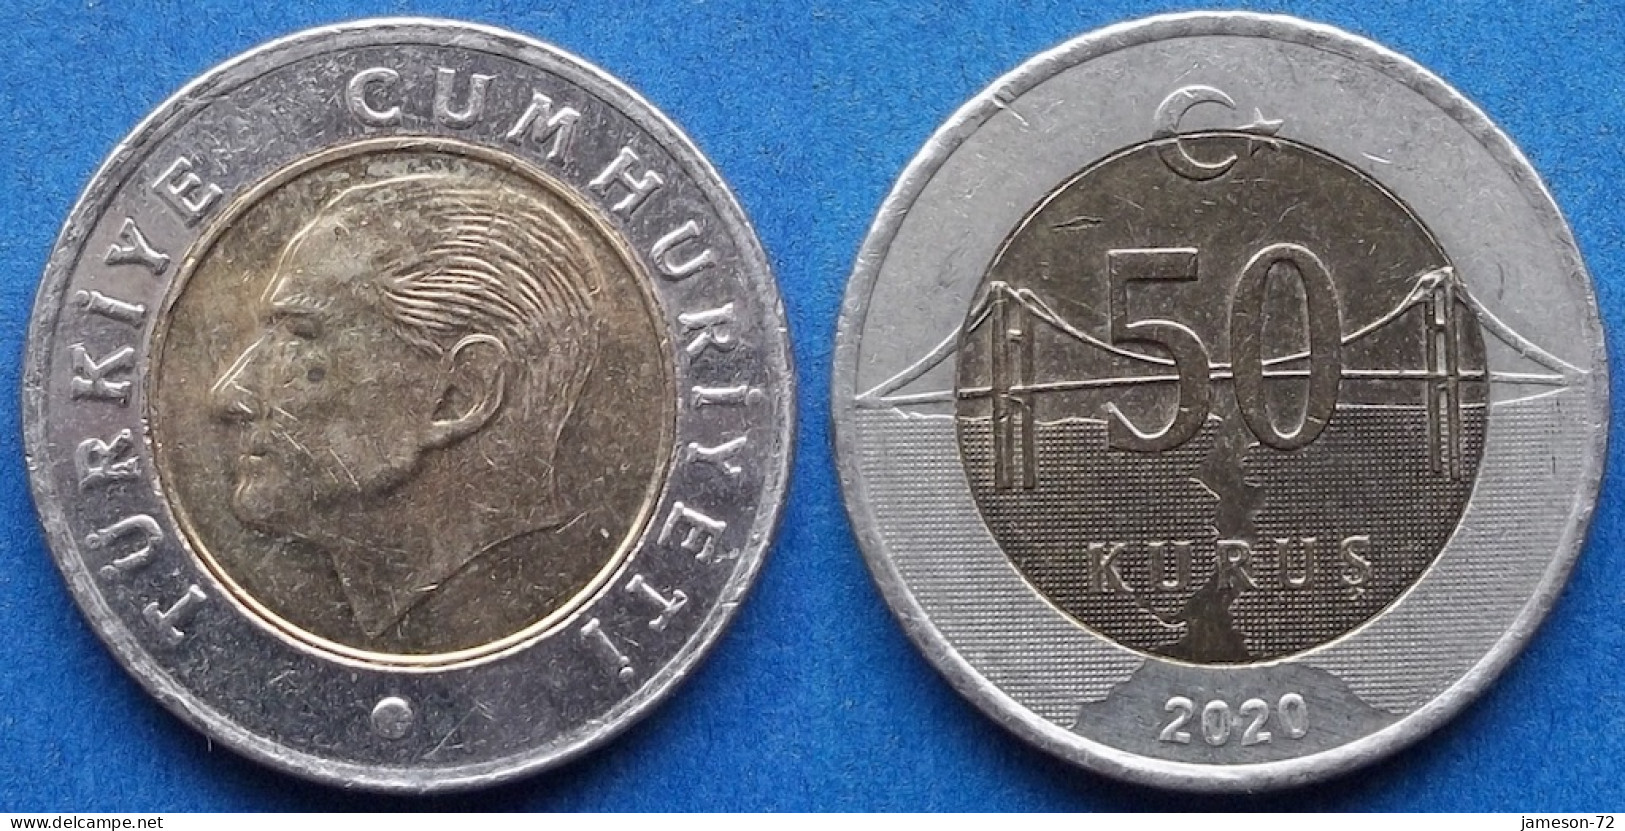 TURKEY - 50 Kurus 2020 KM# 1243 Monetary Reform (2009) - Edelweiss Coins - Turquie